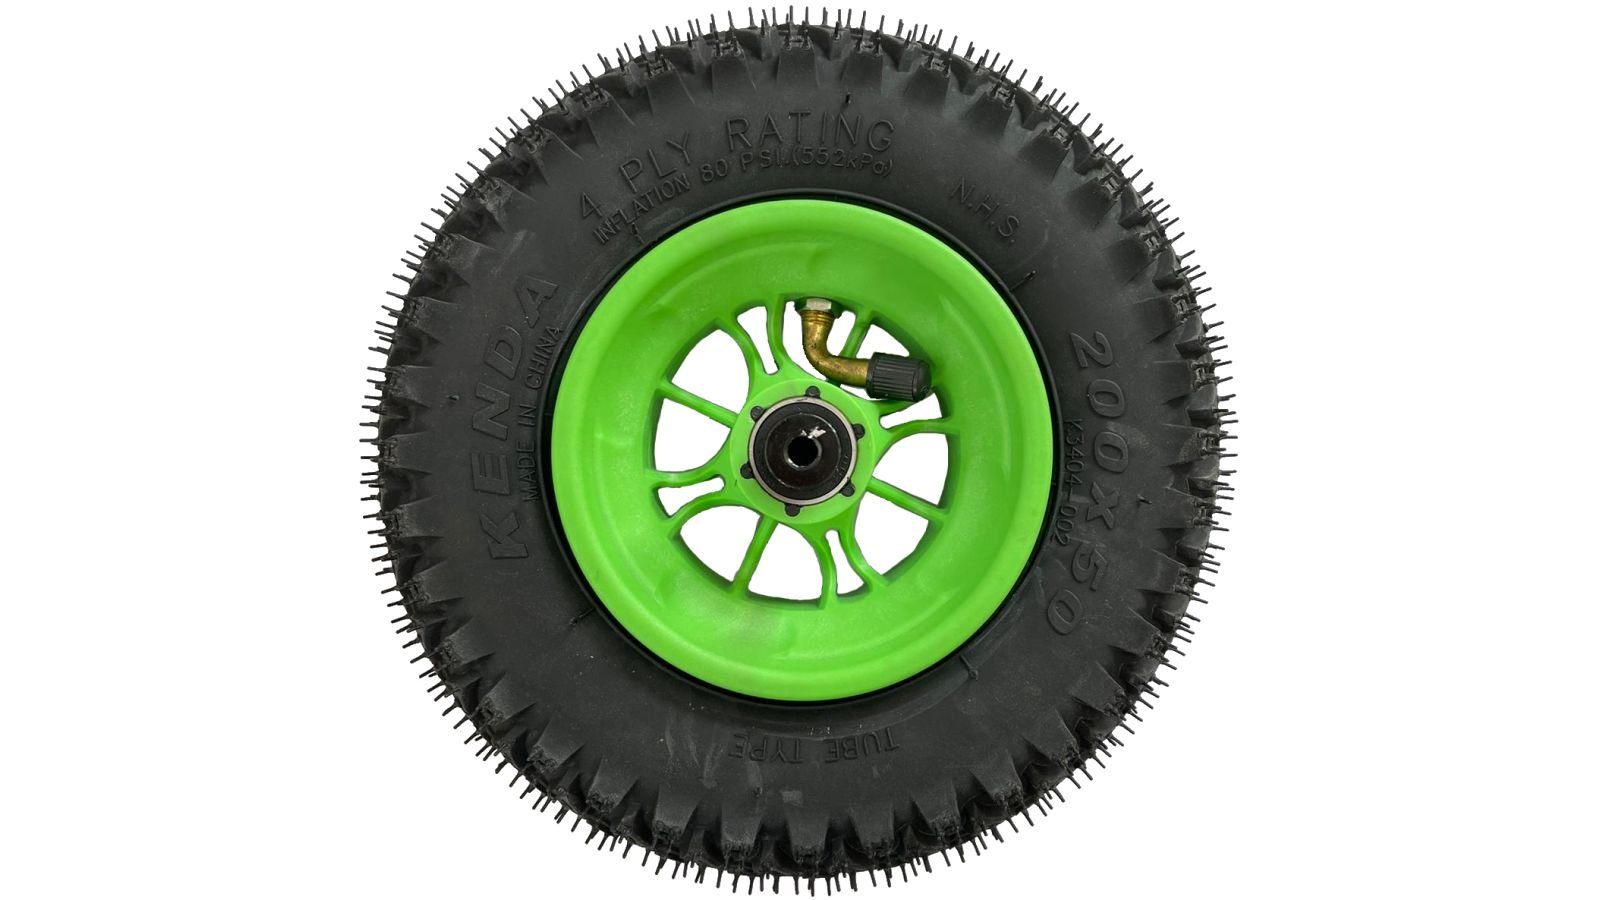 Wheel Green 200mm/8in Roadstar - Roll and Pole